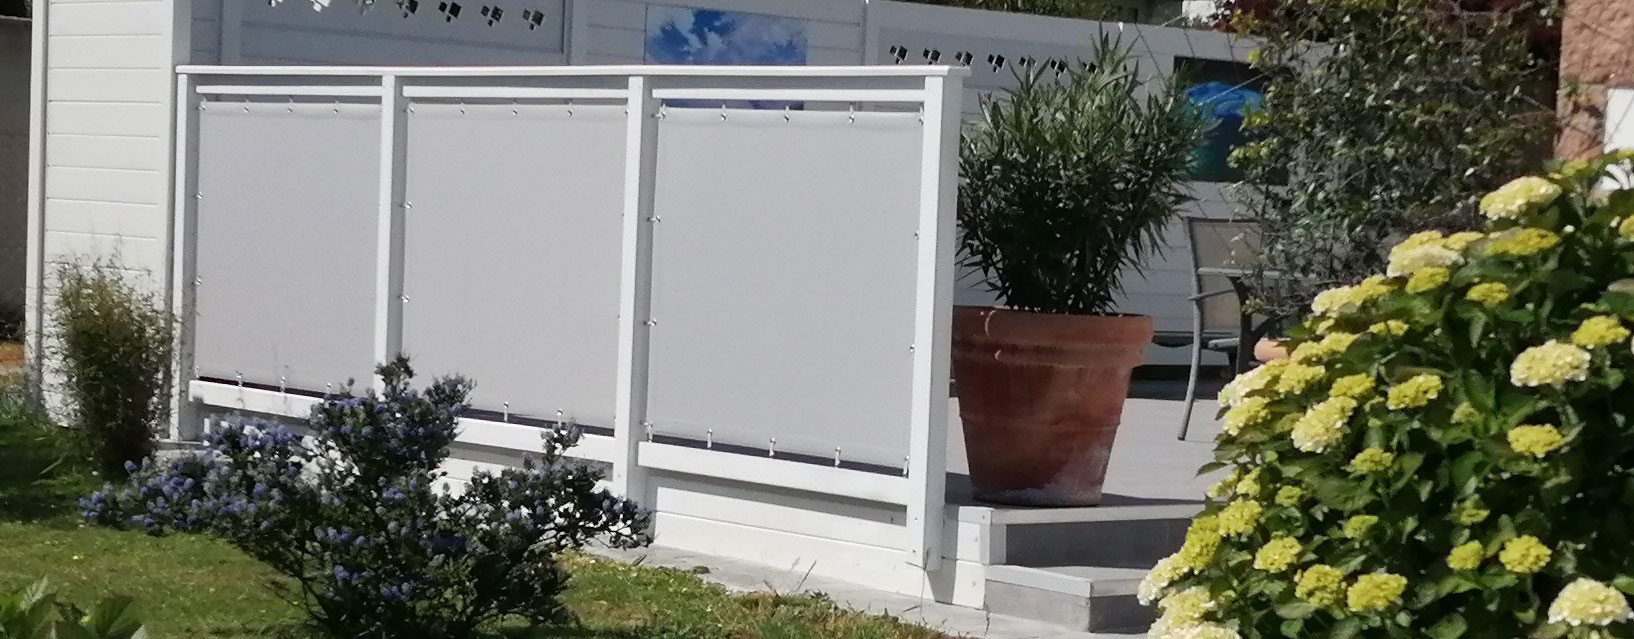 Jardin, terrasse : panneaux brise-vue pour se cacher des voisins